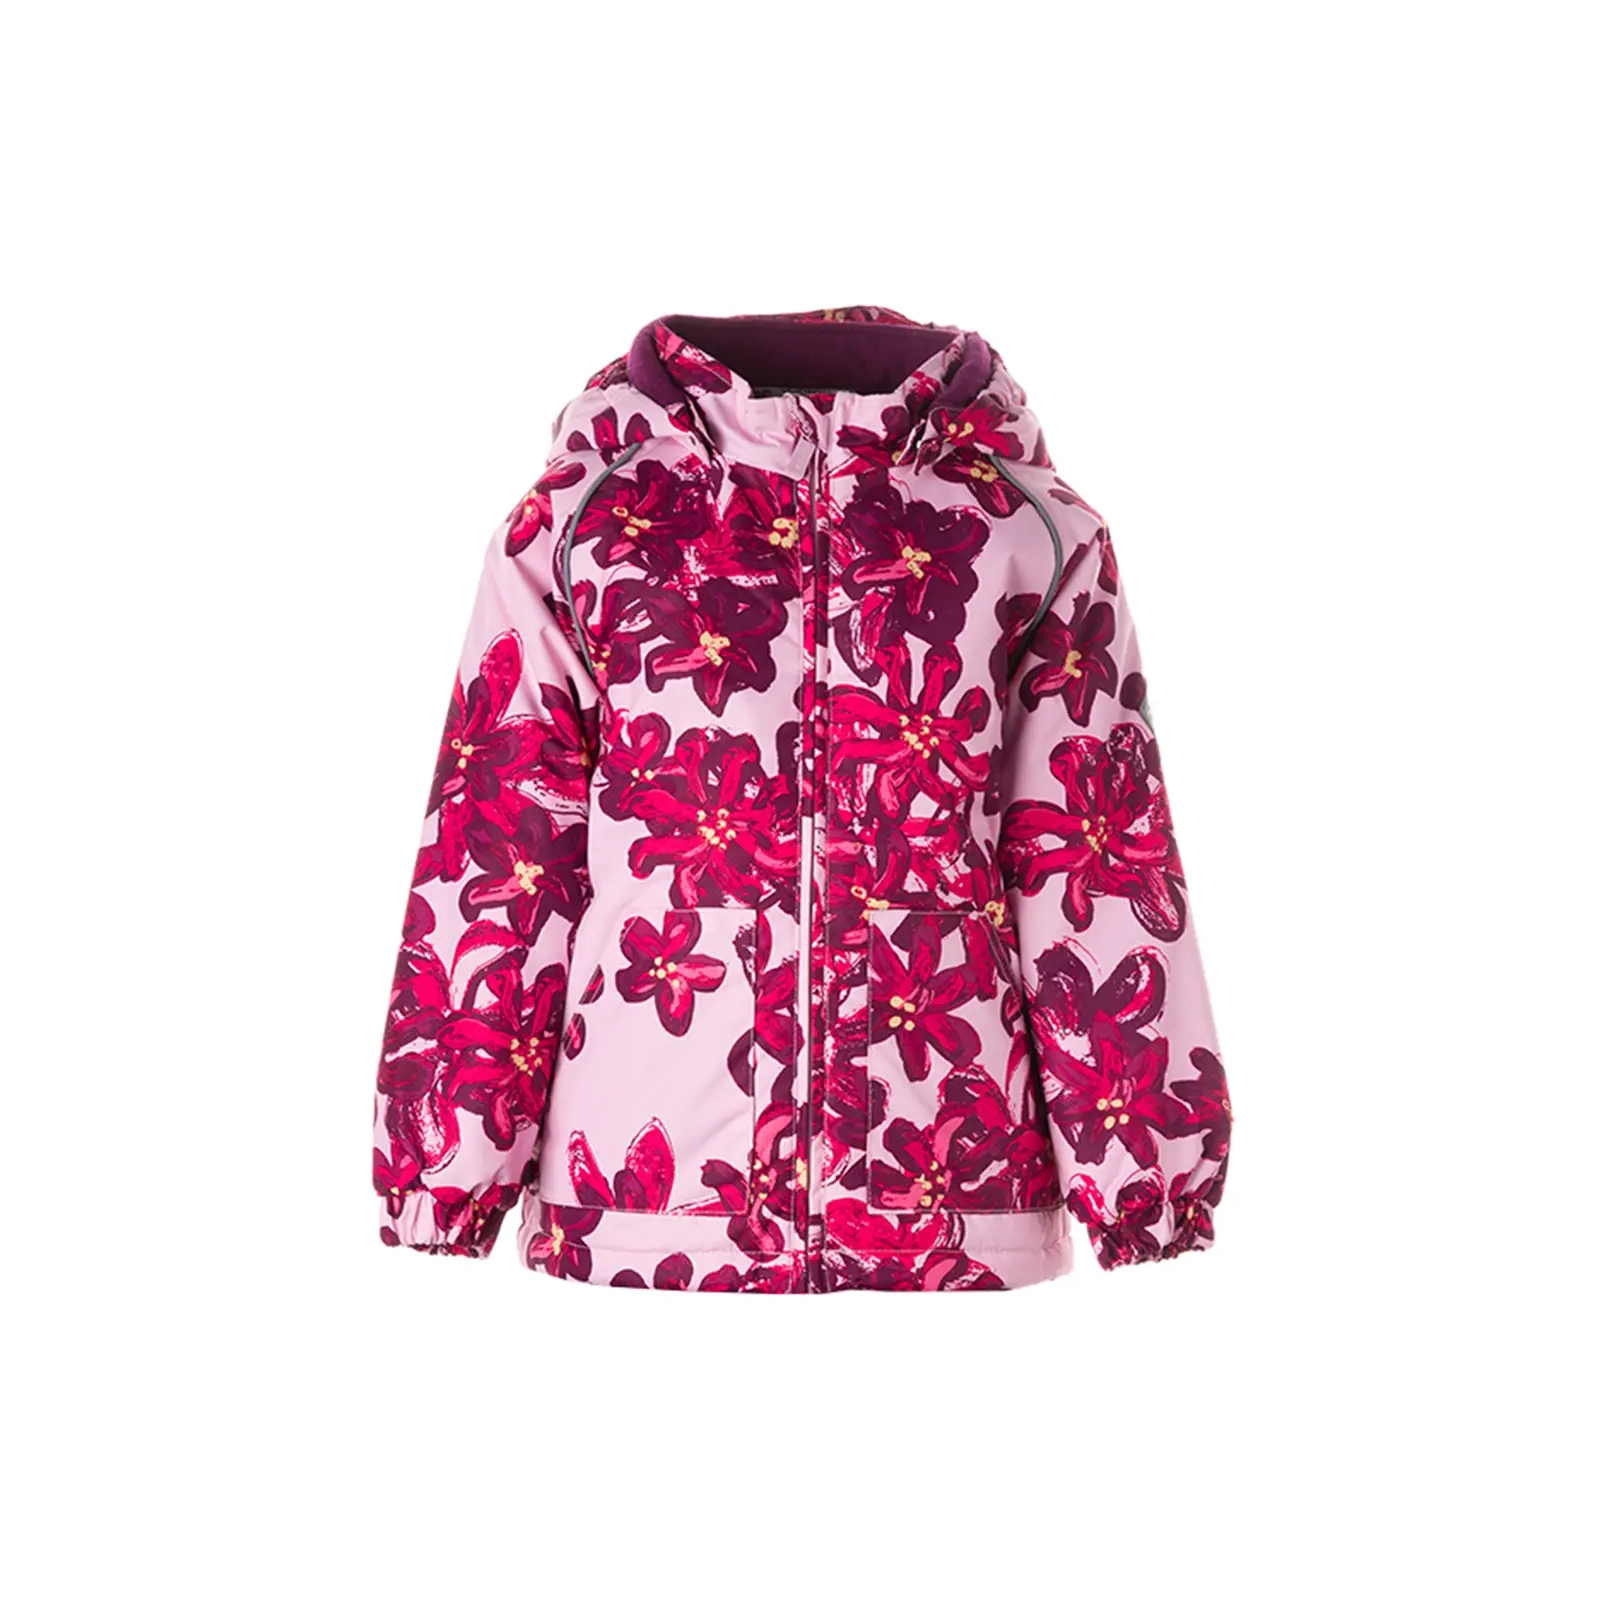 Куртка Huppa VIRGO 1 17210114 розовый с принтом 92 (4741632023833)